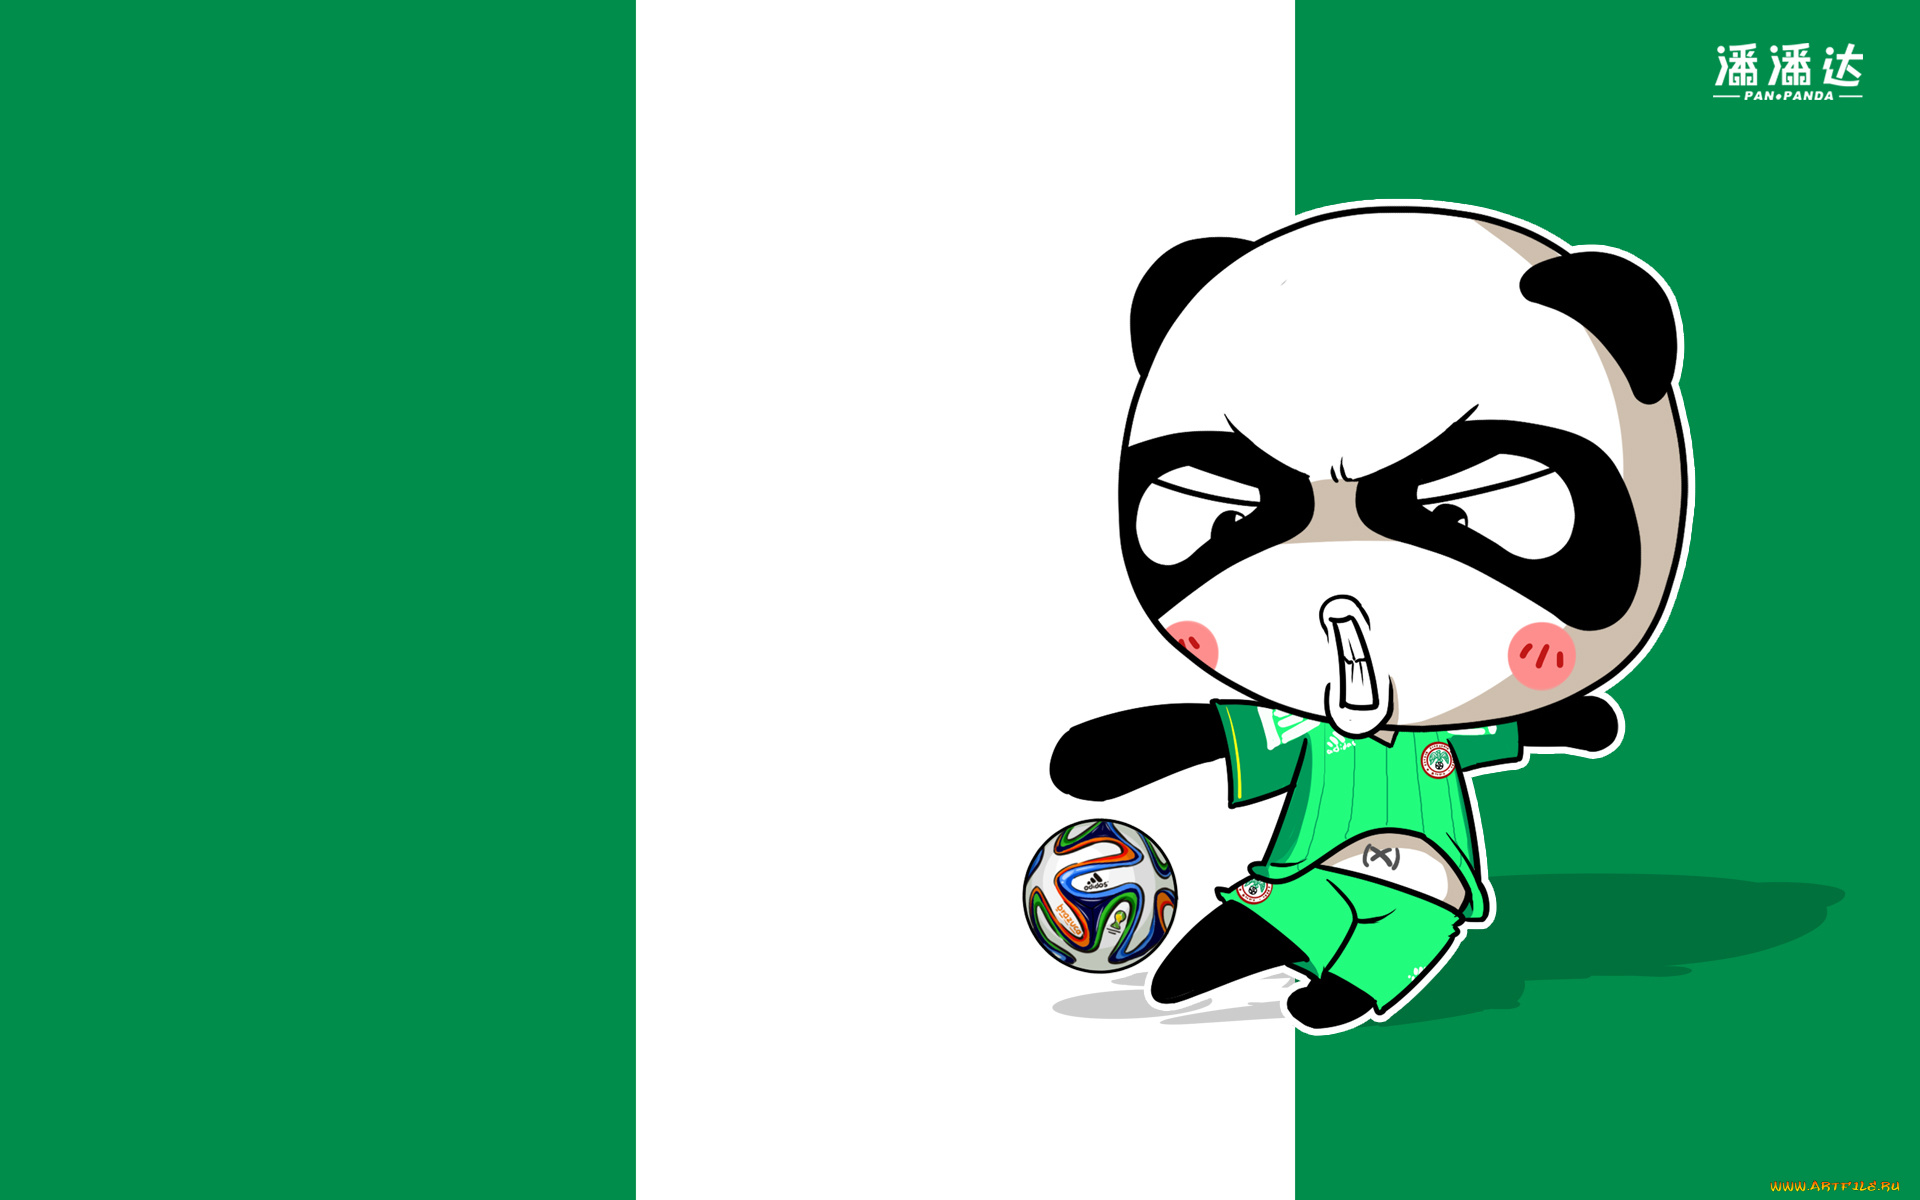 спорт, 3d, рисованные, панда, флаг, мяч, чемпионат, бразилия, 2014г